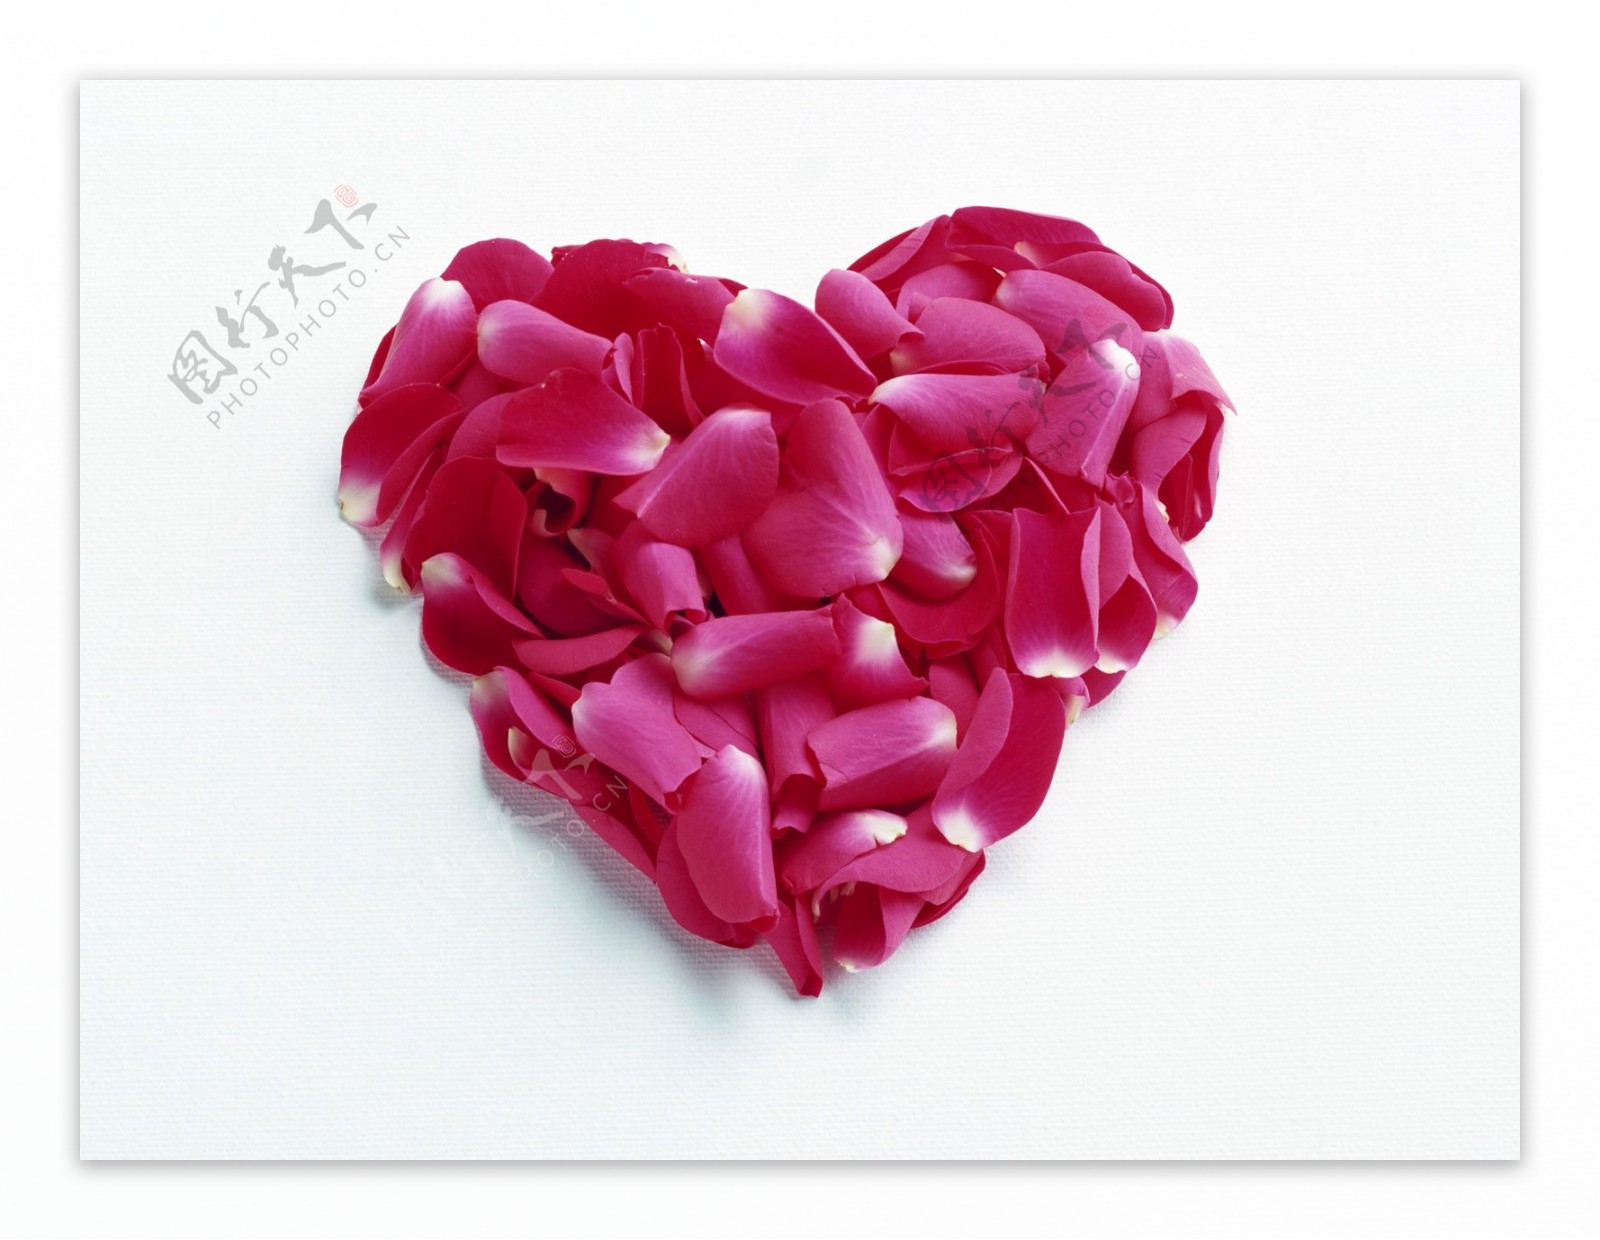 浪漫的心粉红色花瓣堆叠心型花艺